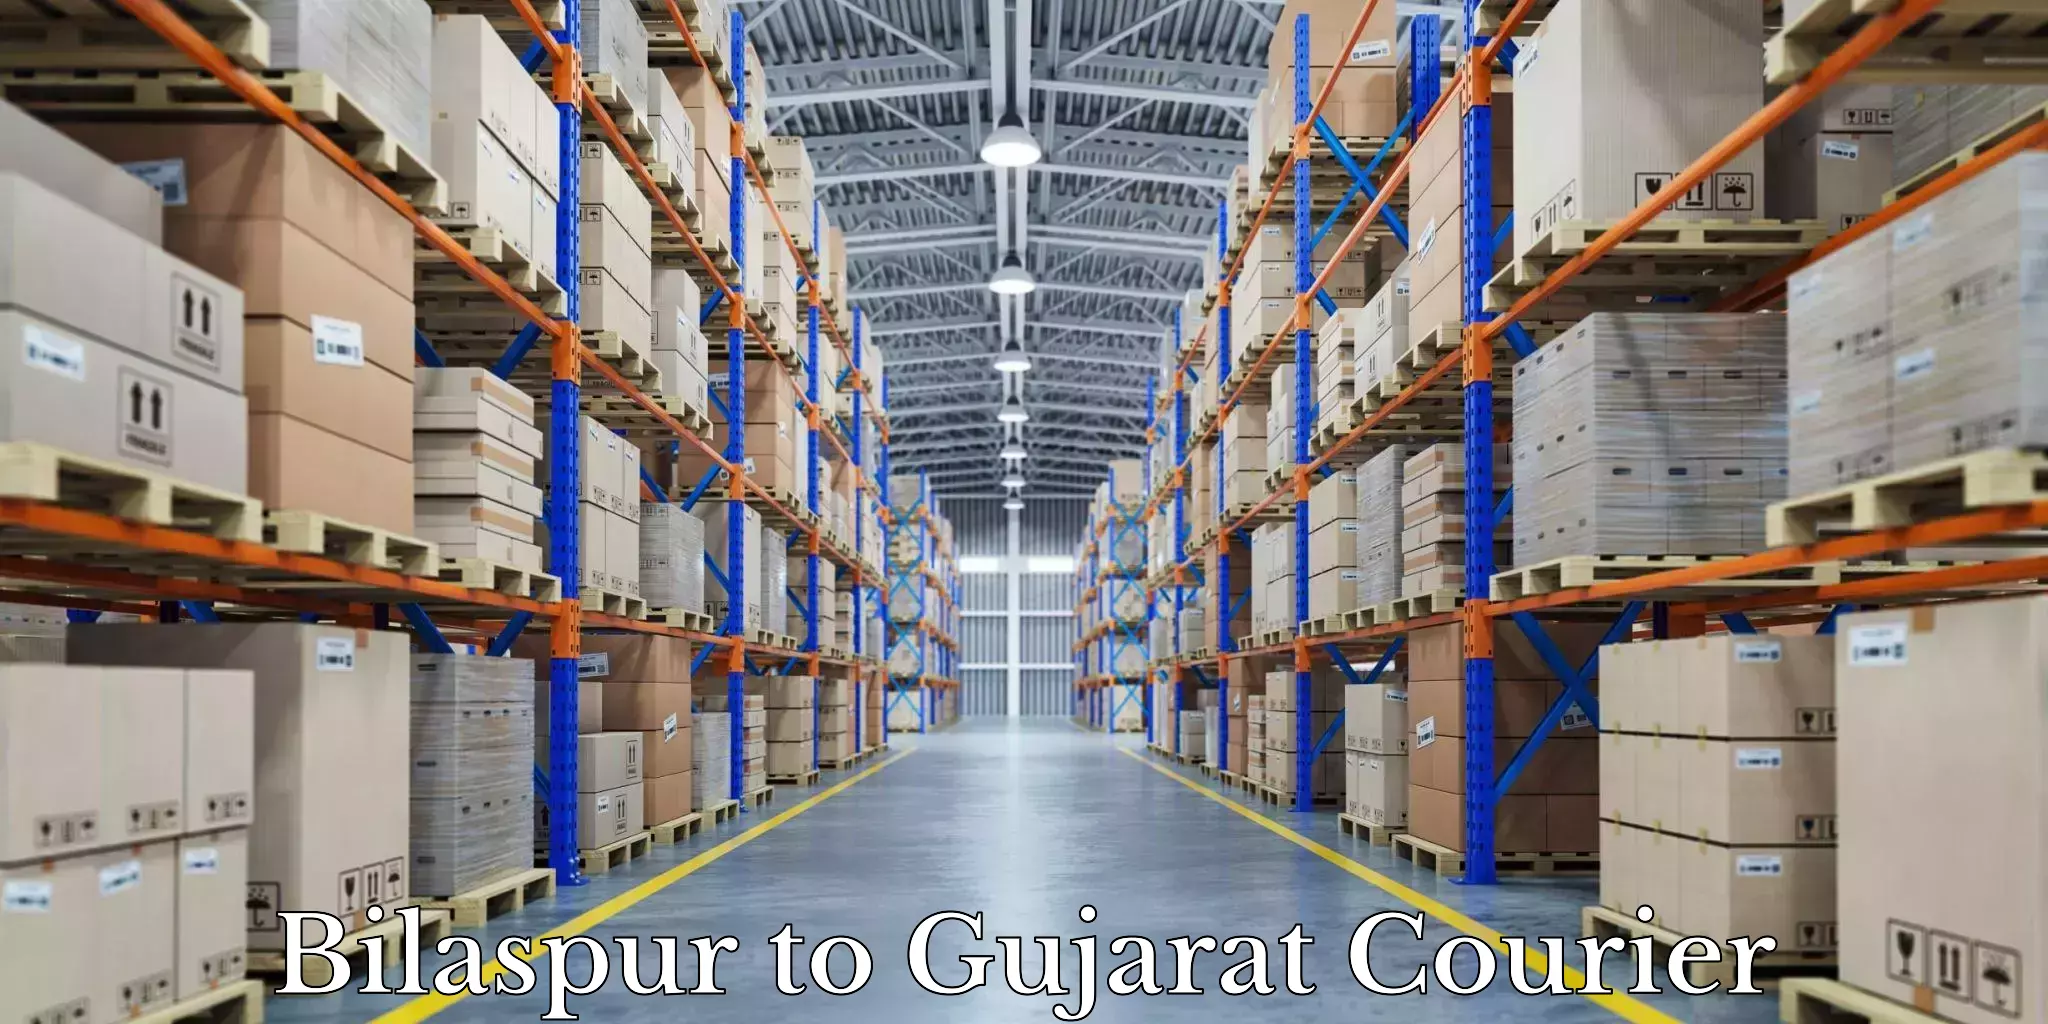 Furniture transport company Bilaspur to Gujarat